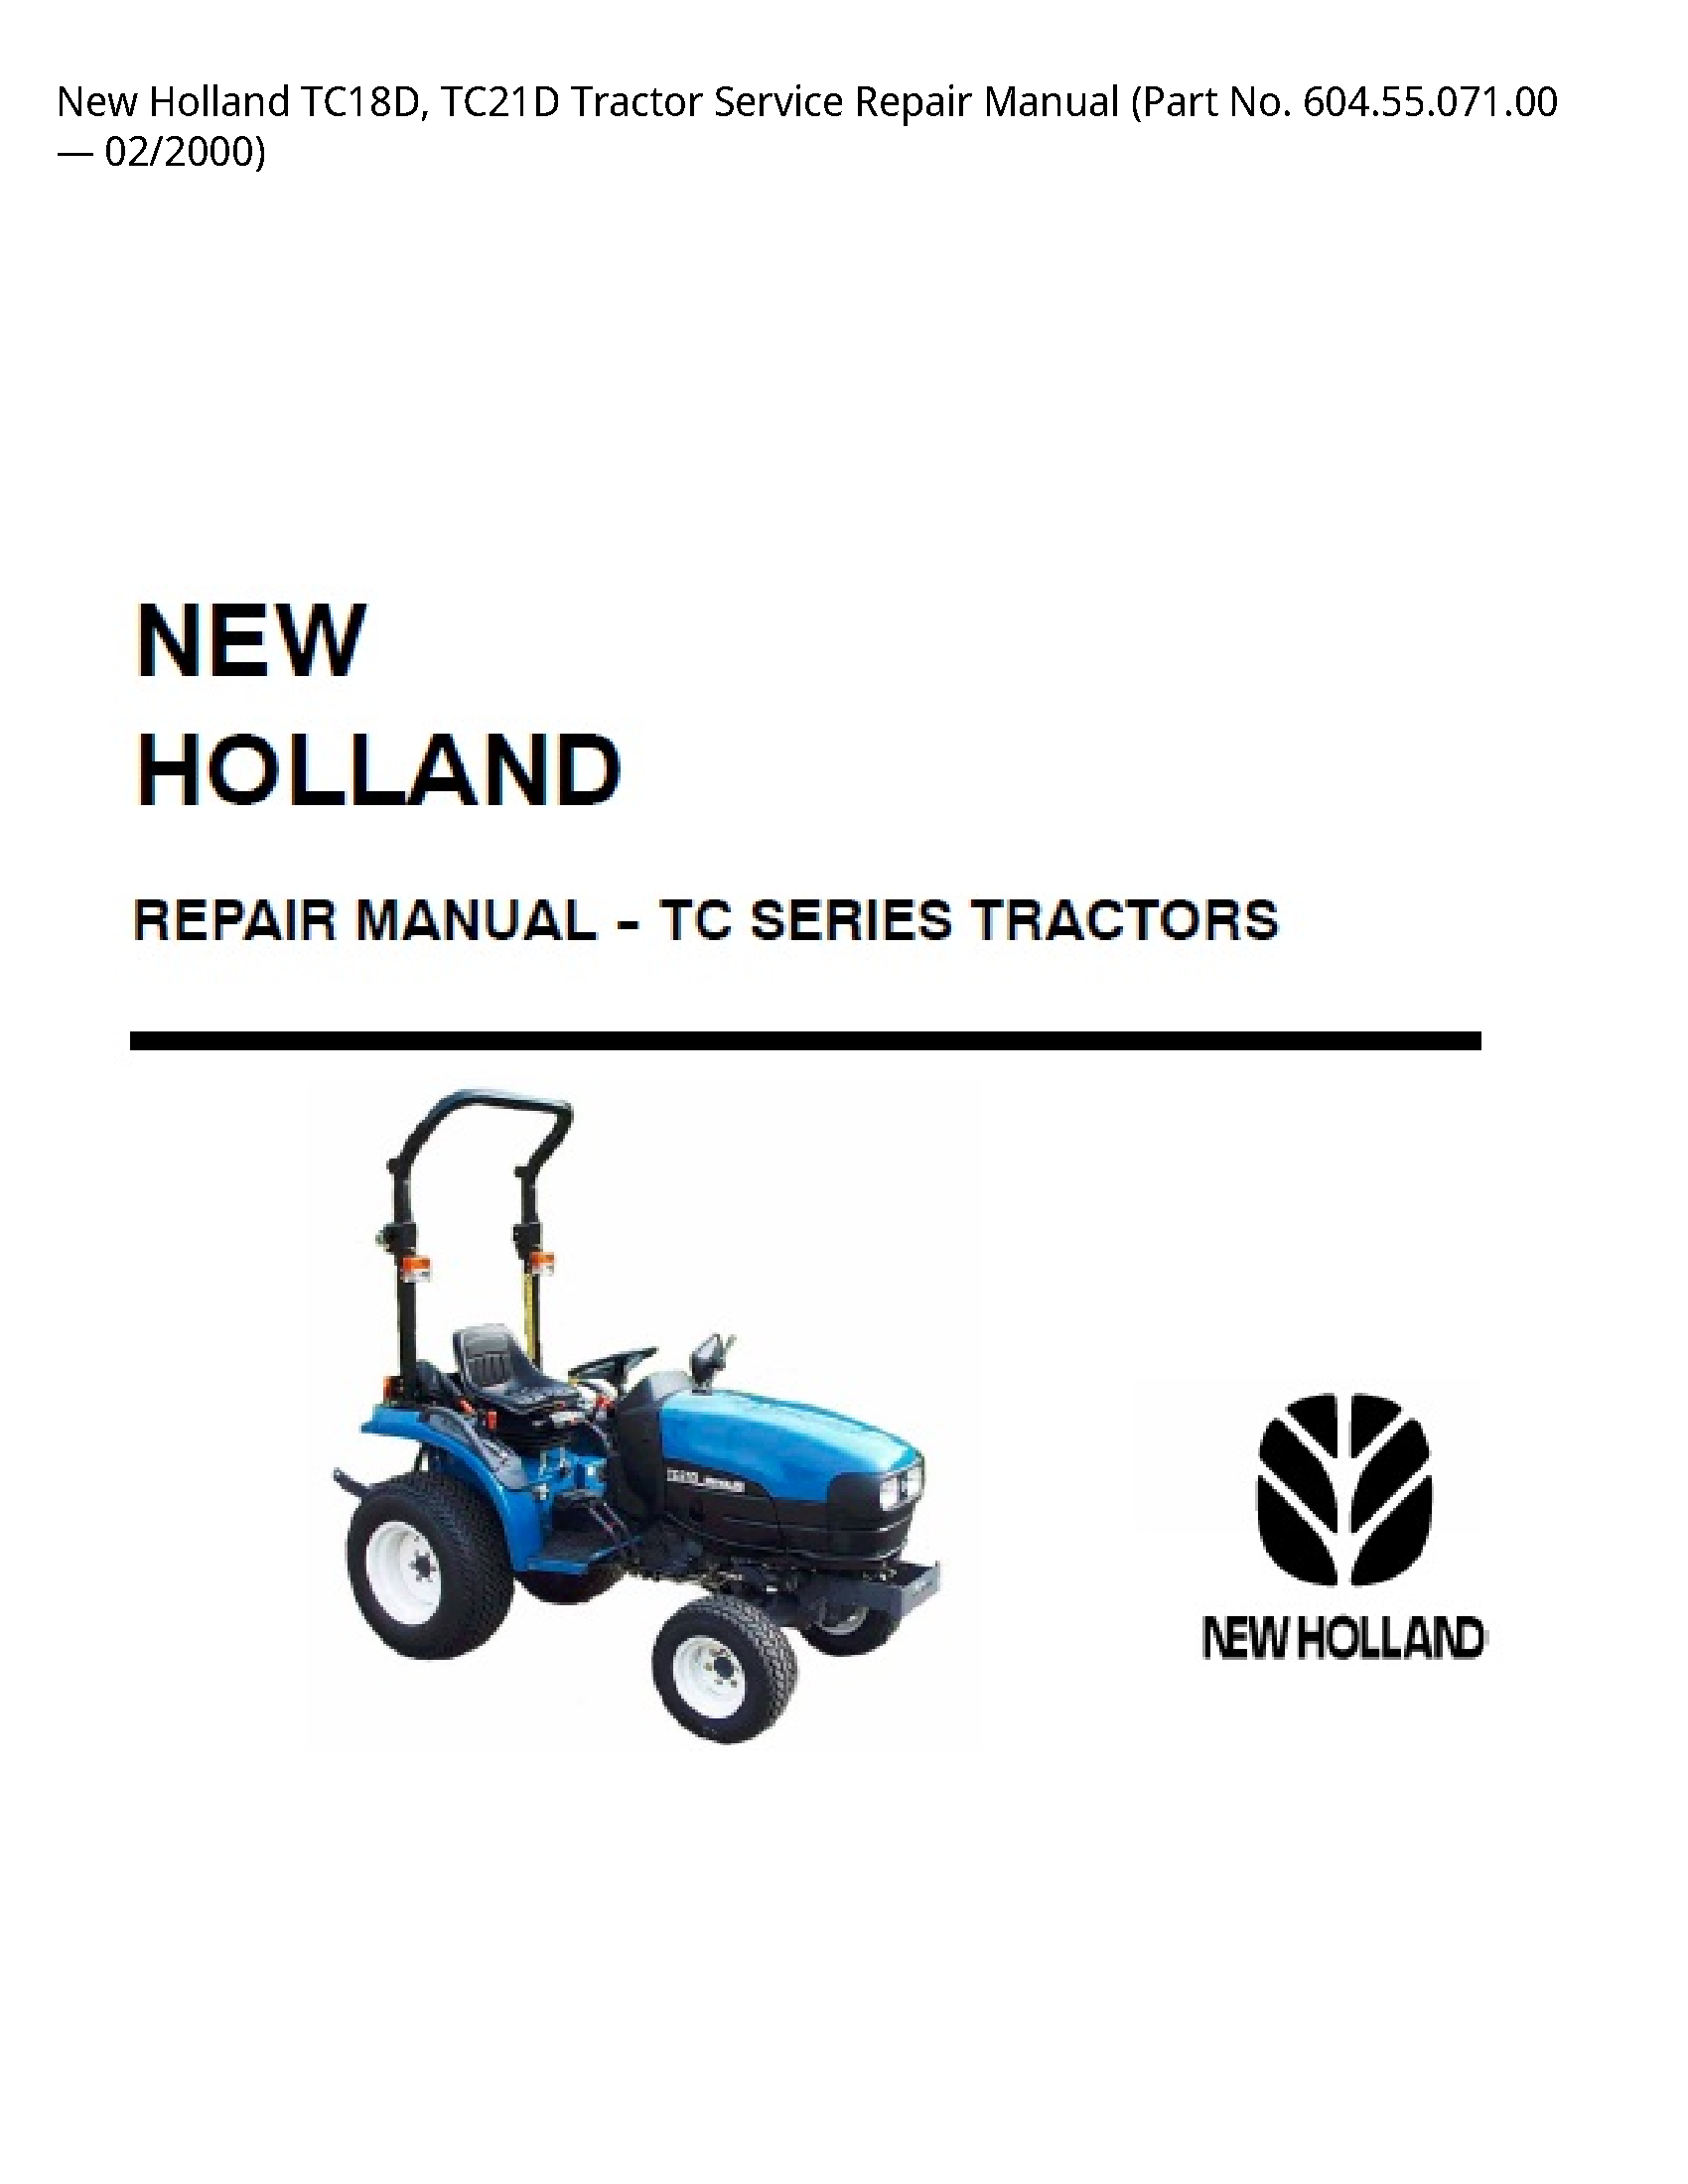 New Holland TC18D Tractor manual